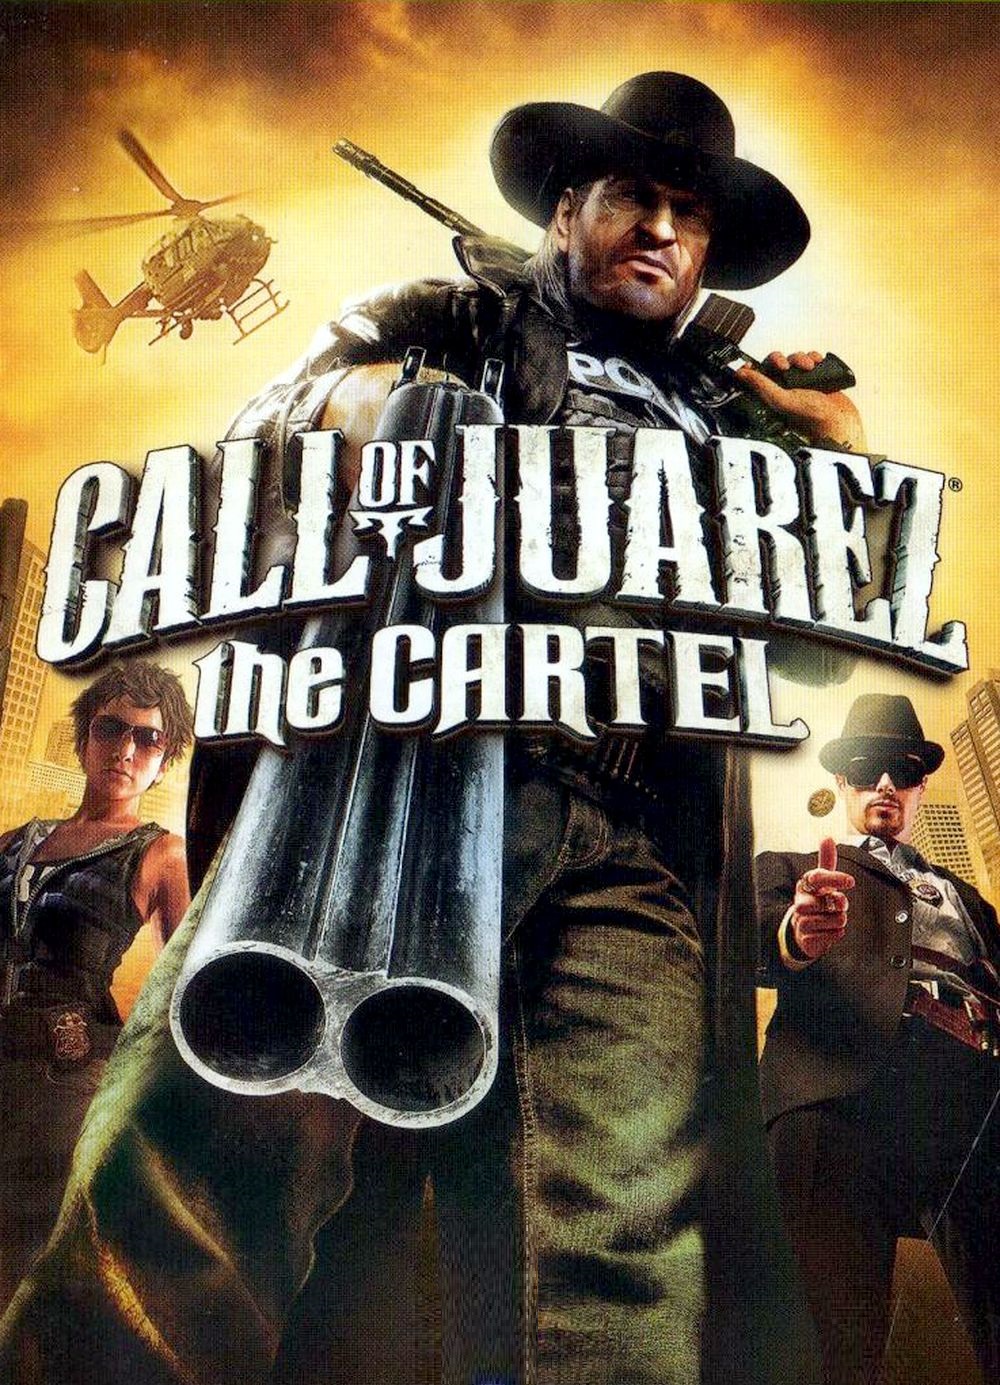 Call of Juarez: Картель (Steam Key | RU+CIS)